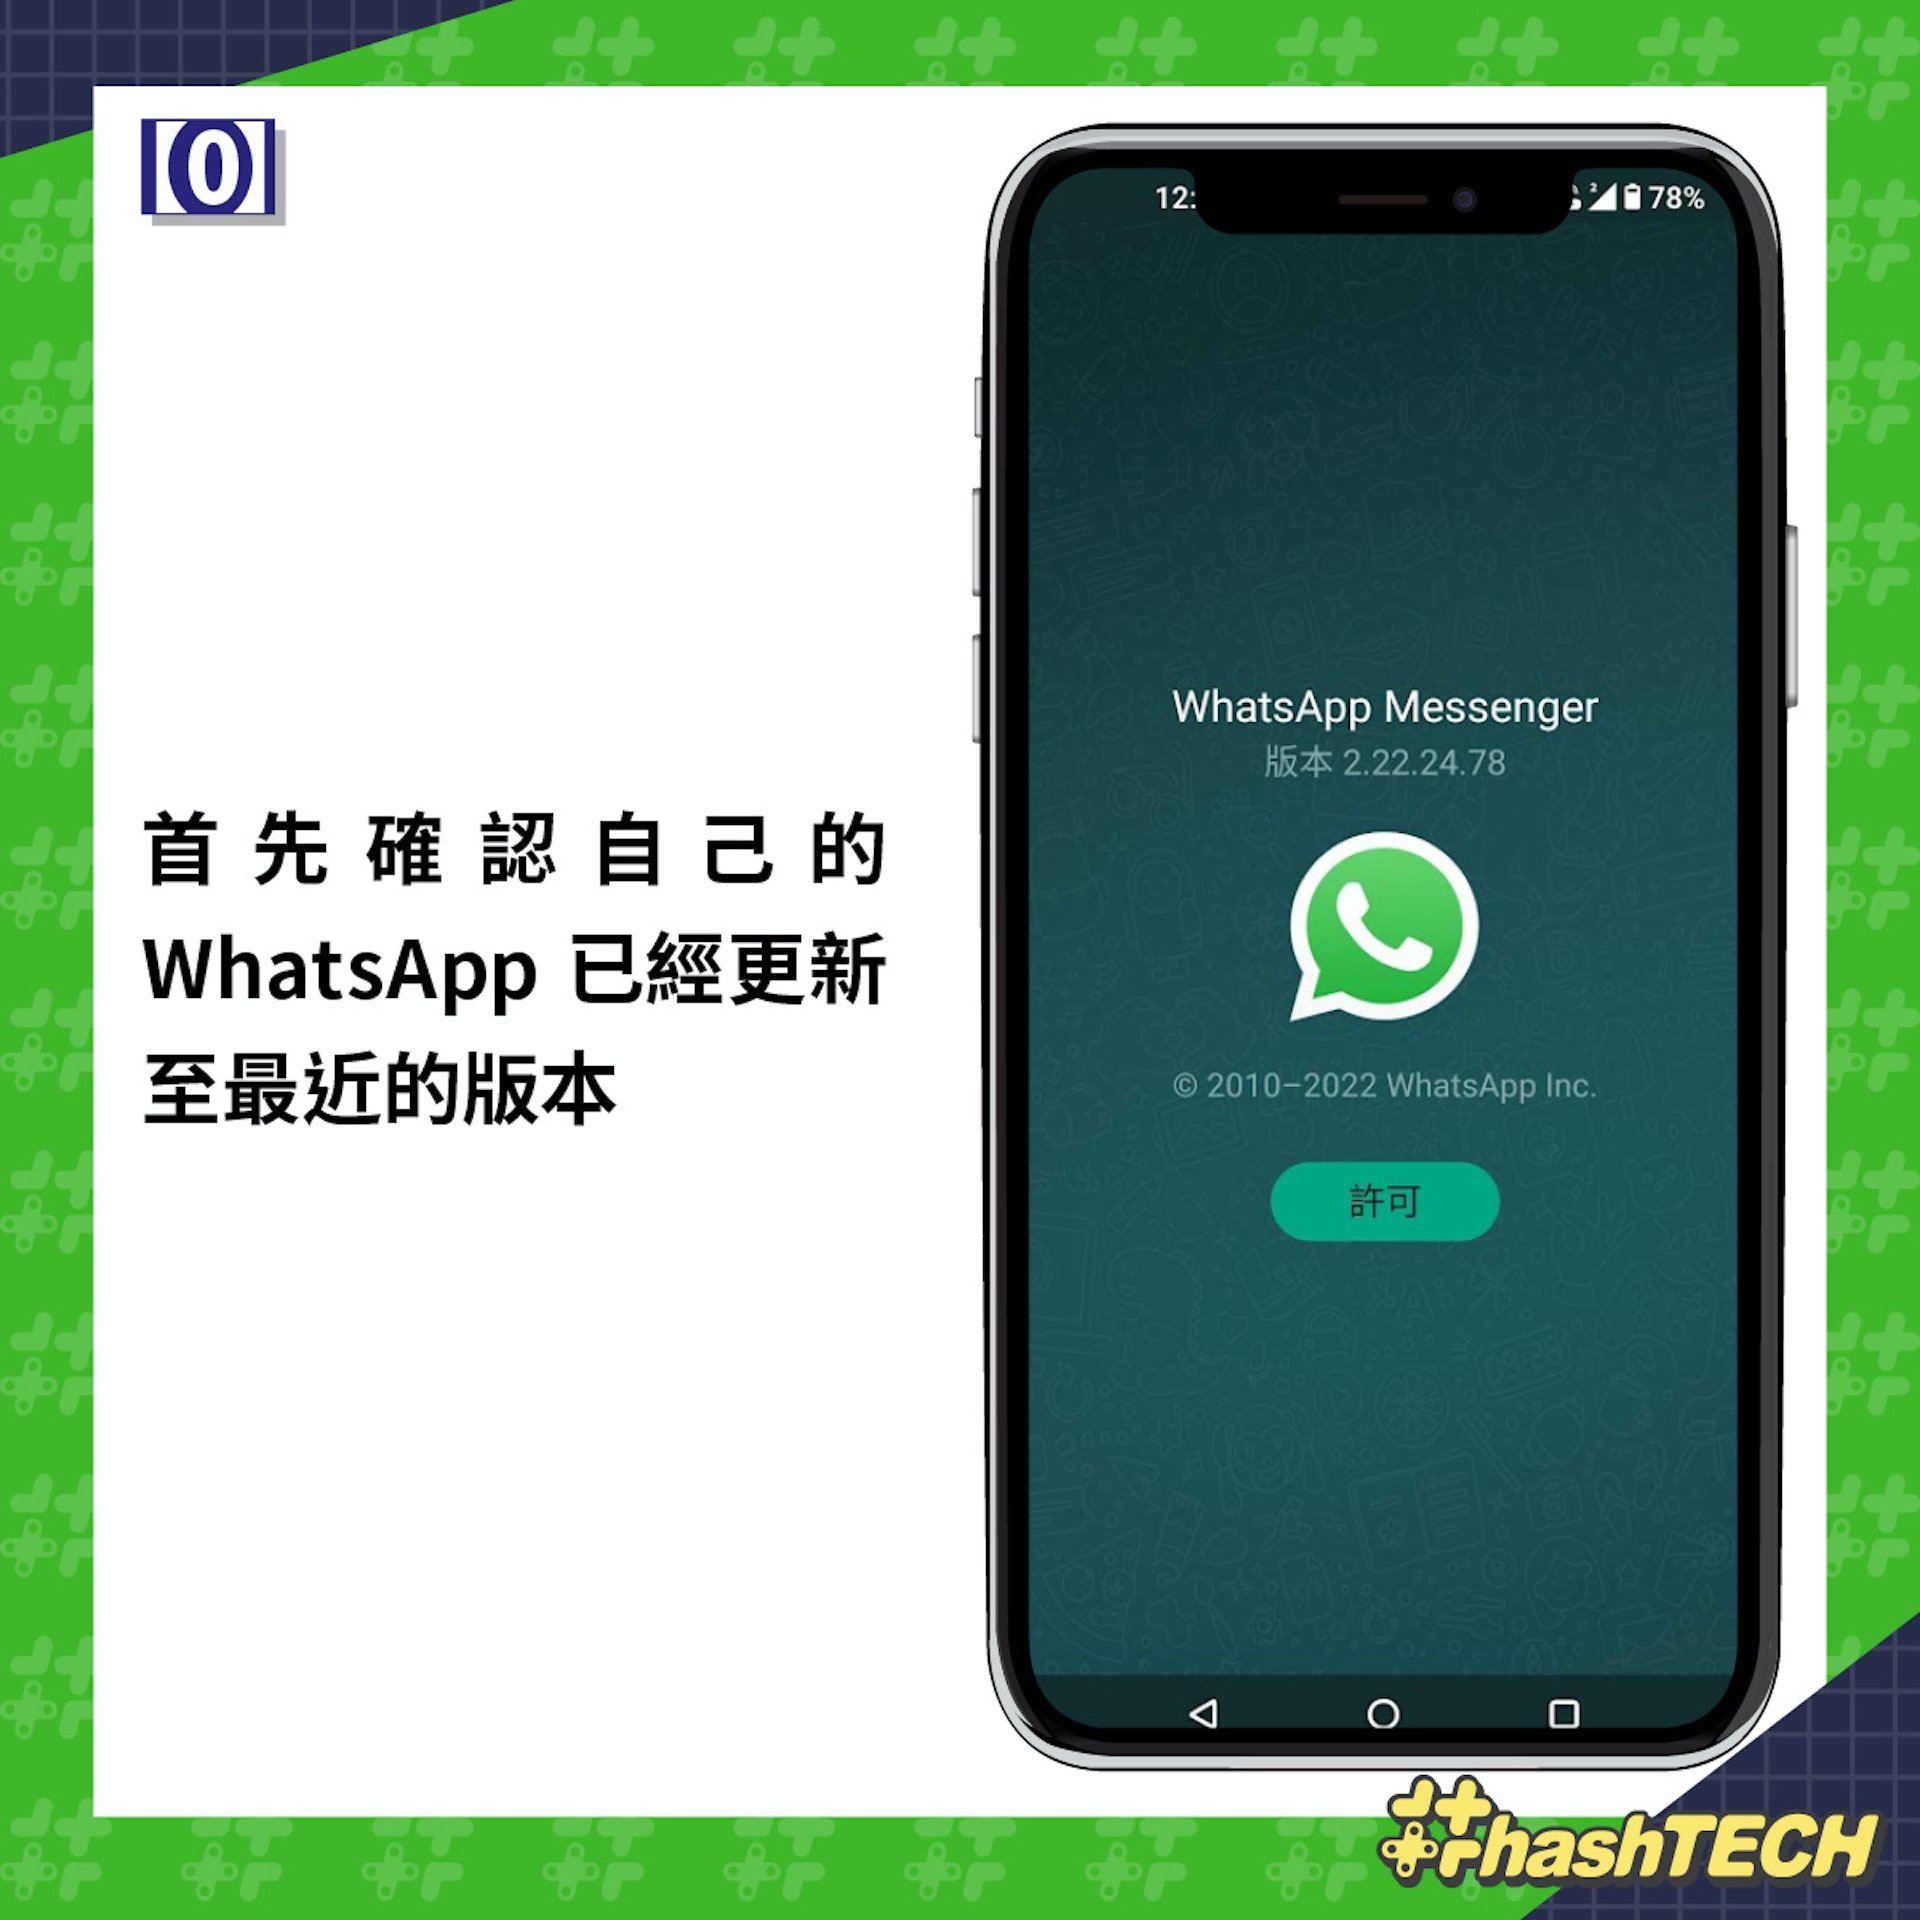 WhatsApp 代理伺服器功能 3 步可啟動